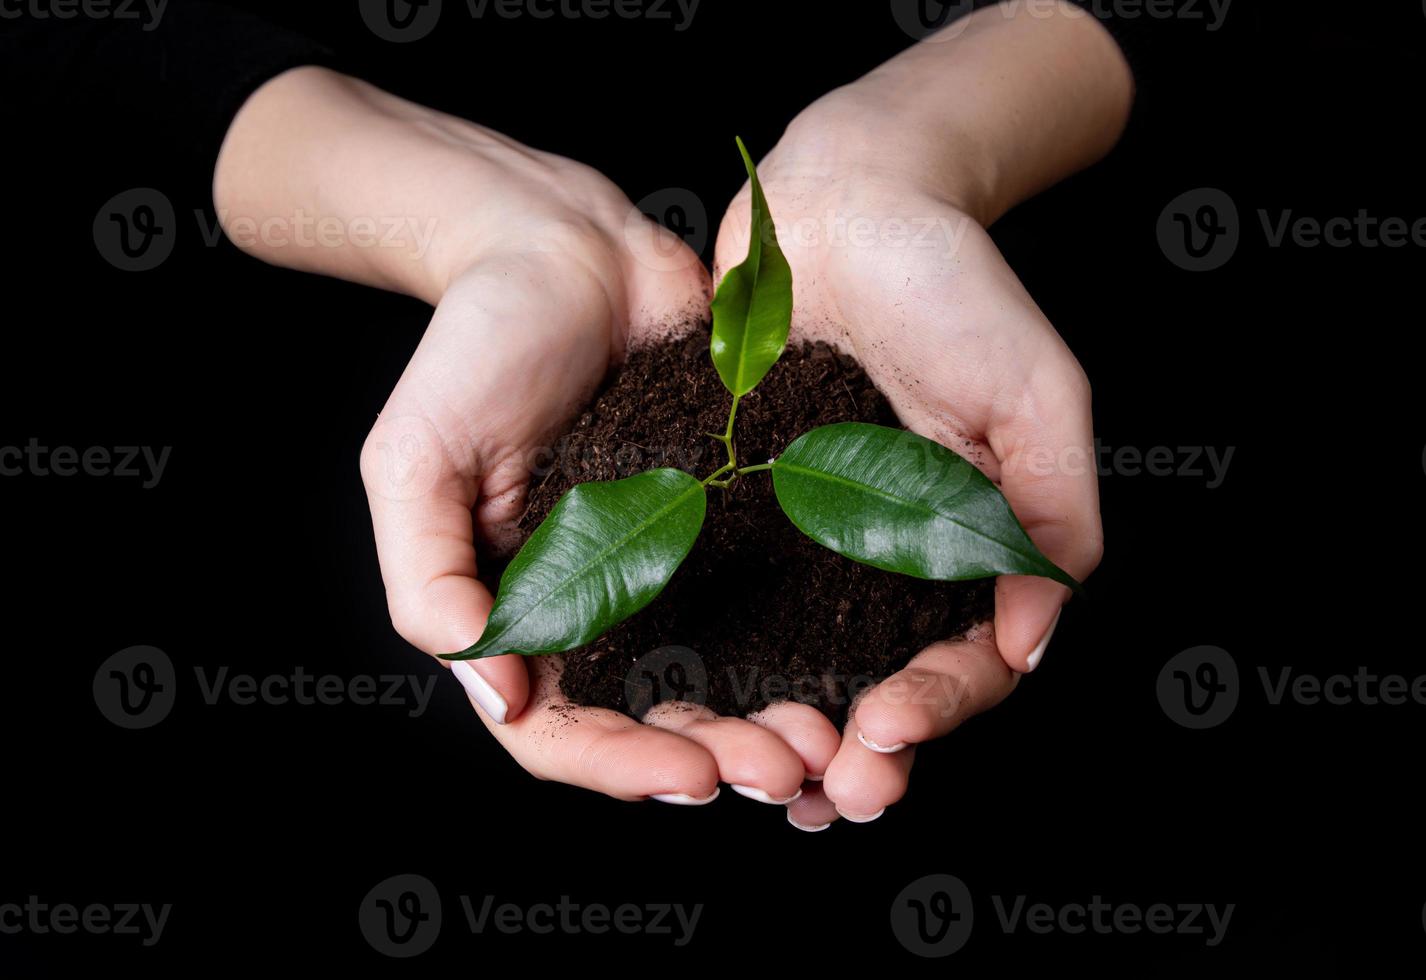 pequeño brote joven para plantar en el suelo en las manos, dos manos sosteniendo una planta verde joven, plantar árboles, amar la naturaleza, salvar el mundo, ecología, protección ambiental foto